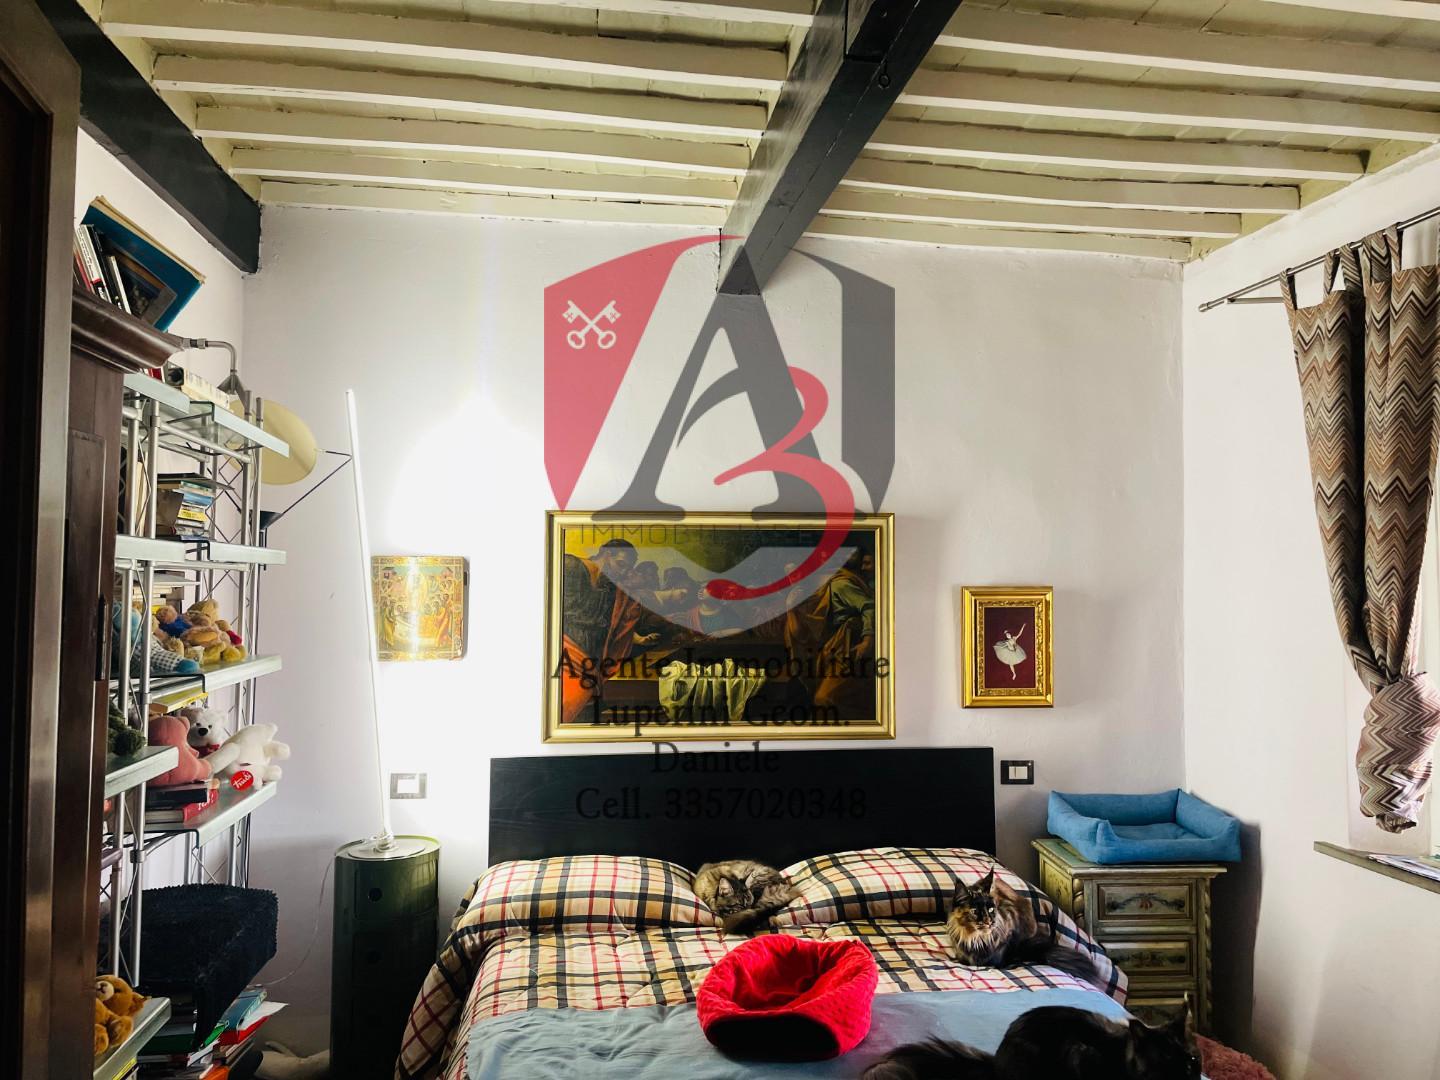 Appartamento in vendita, Pisa porta fiorentina